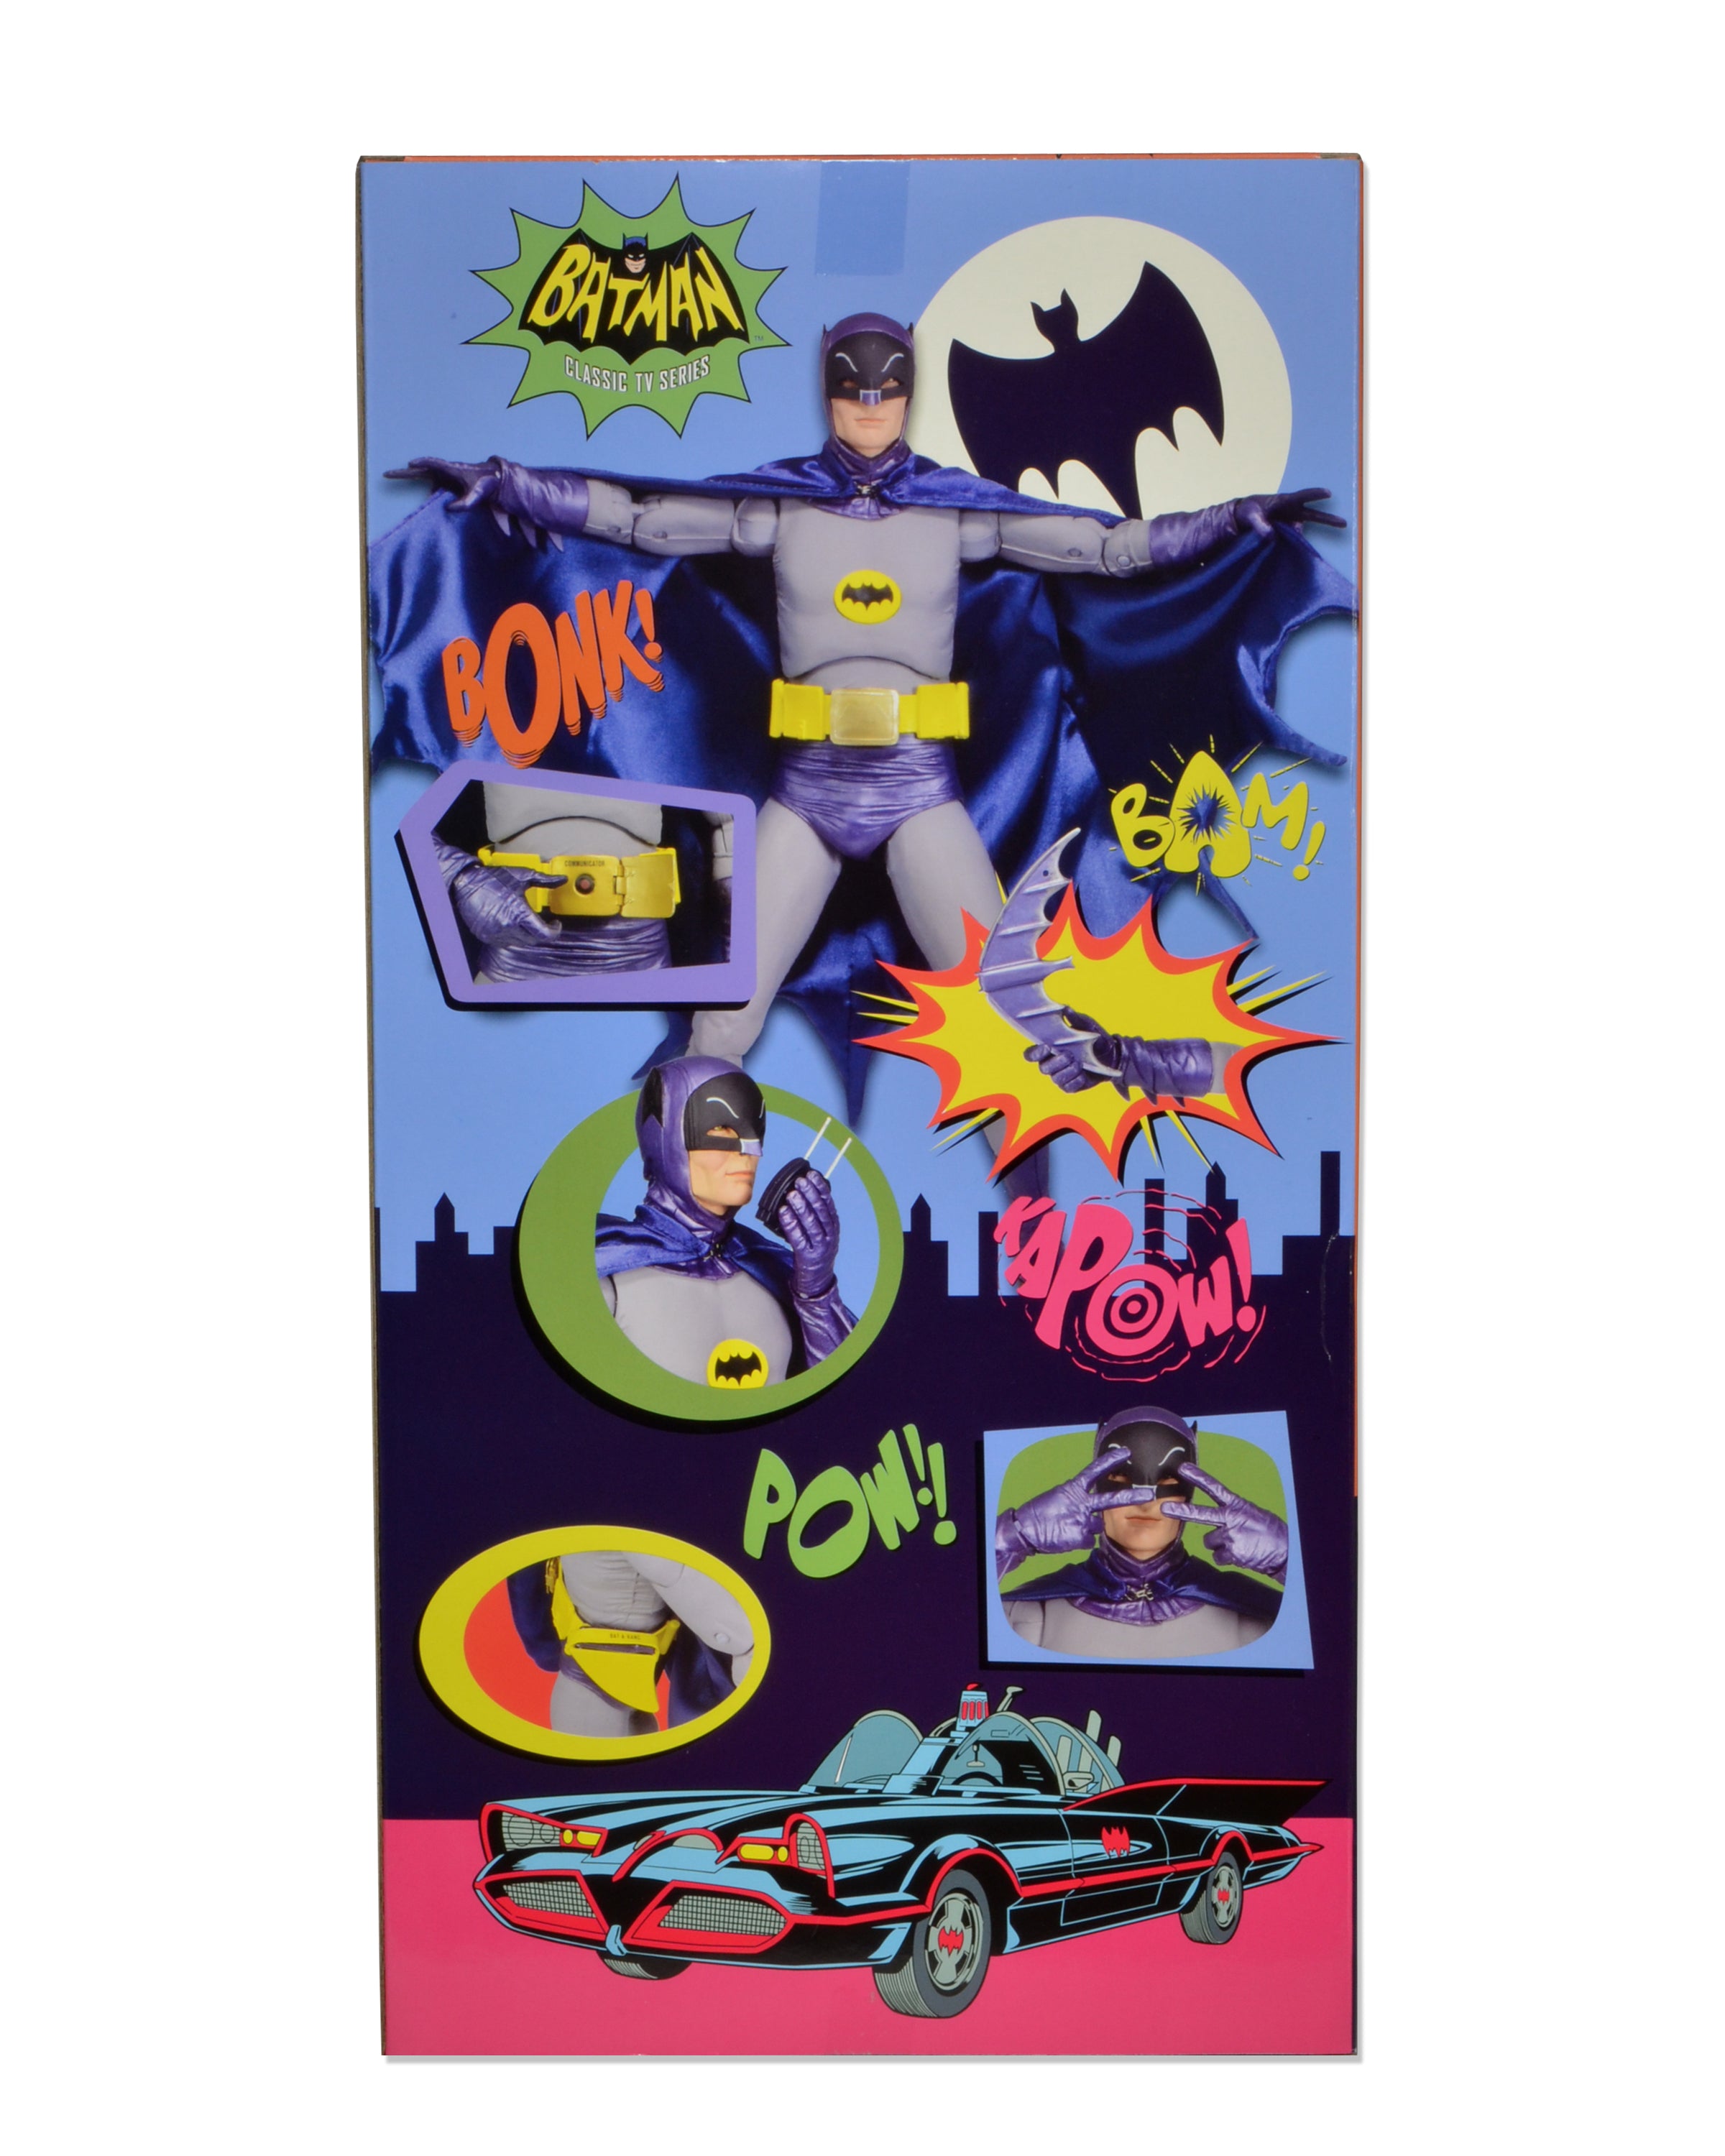 Quarter scale Adam West Batman action figure box back